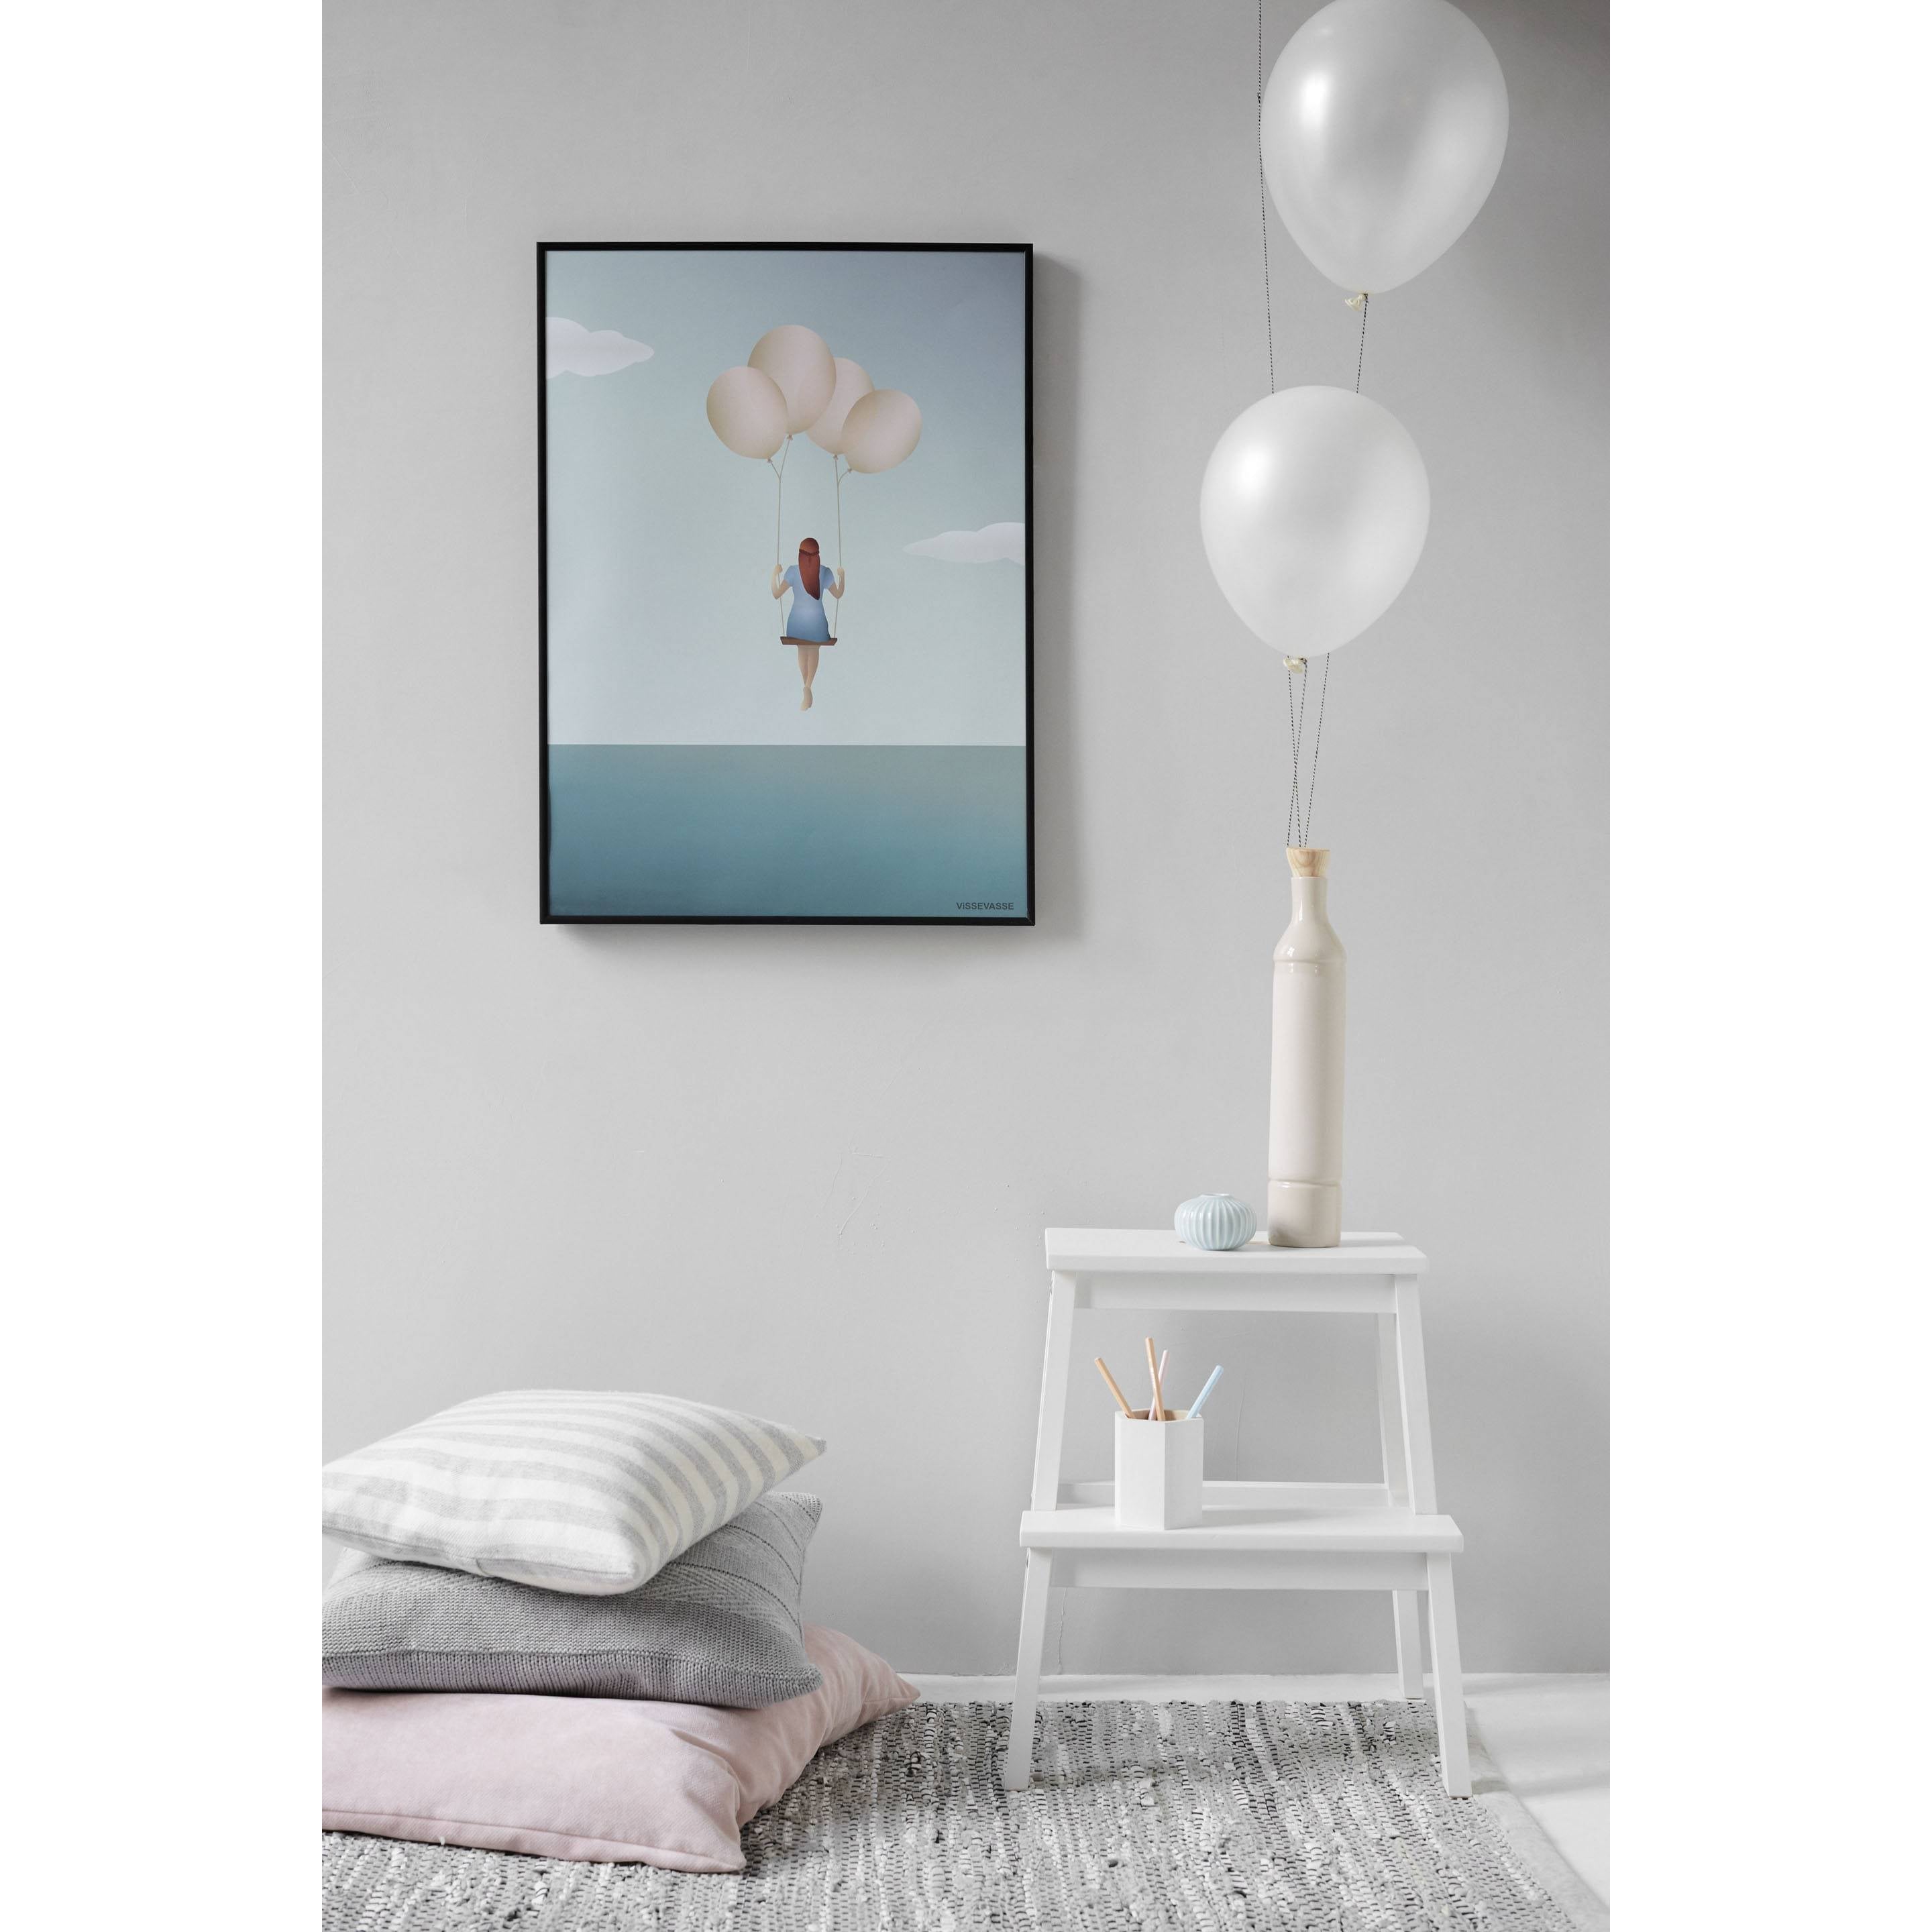 Vissevasse Balloon Dream Poster, 15X21 Cm-Wanddekoration-Vissevasse-5713138500315-F-2015-003-S-VIS-inwohn